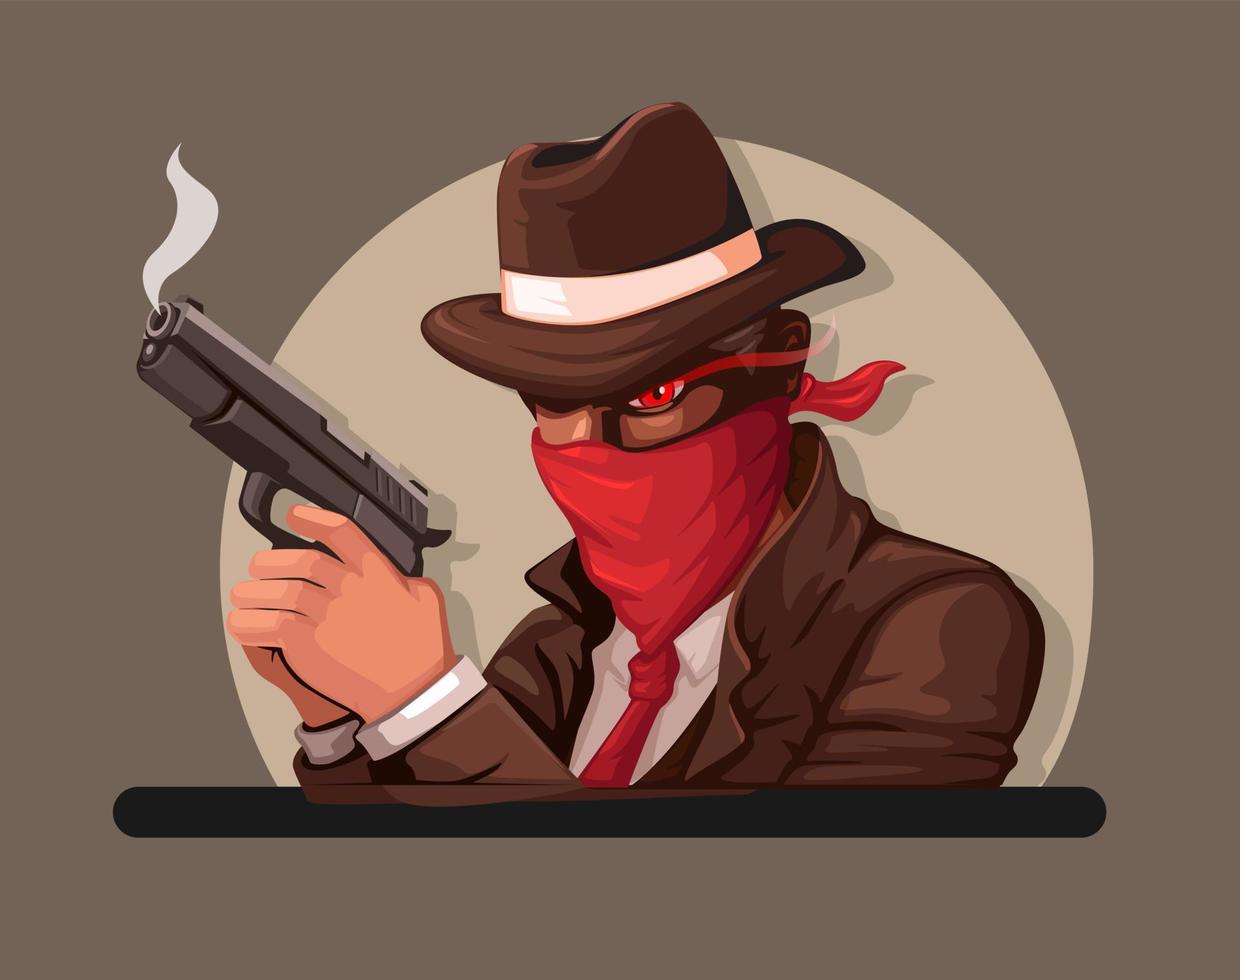 mafia porter masque et en portant pistolet personnage mascotte dessin animé illustration vecteur